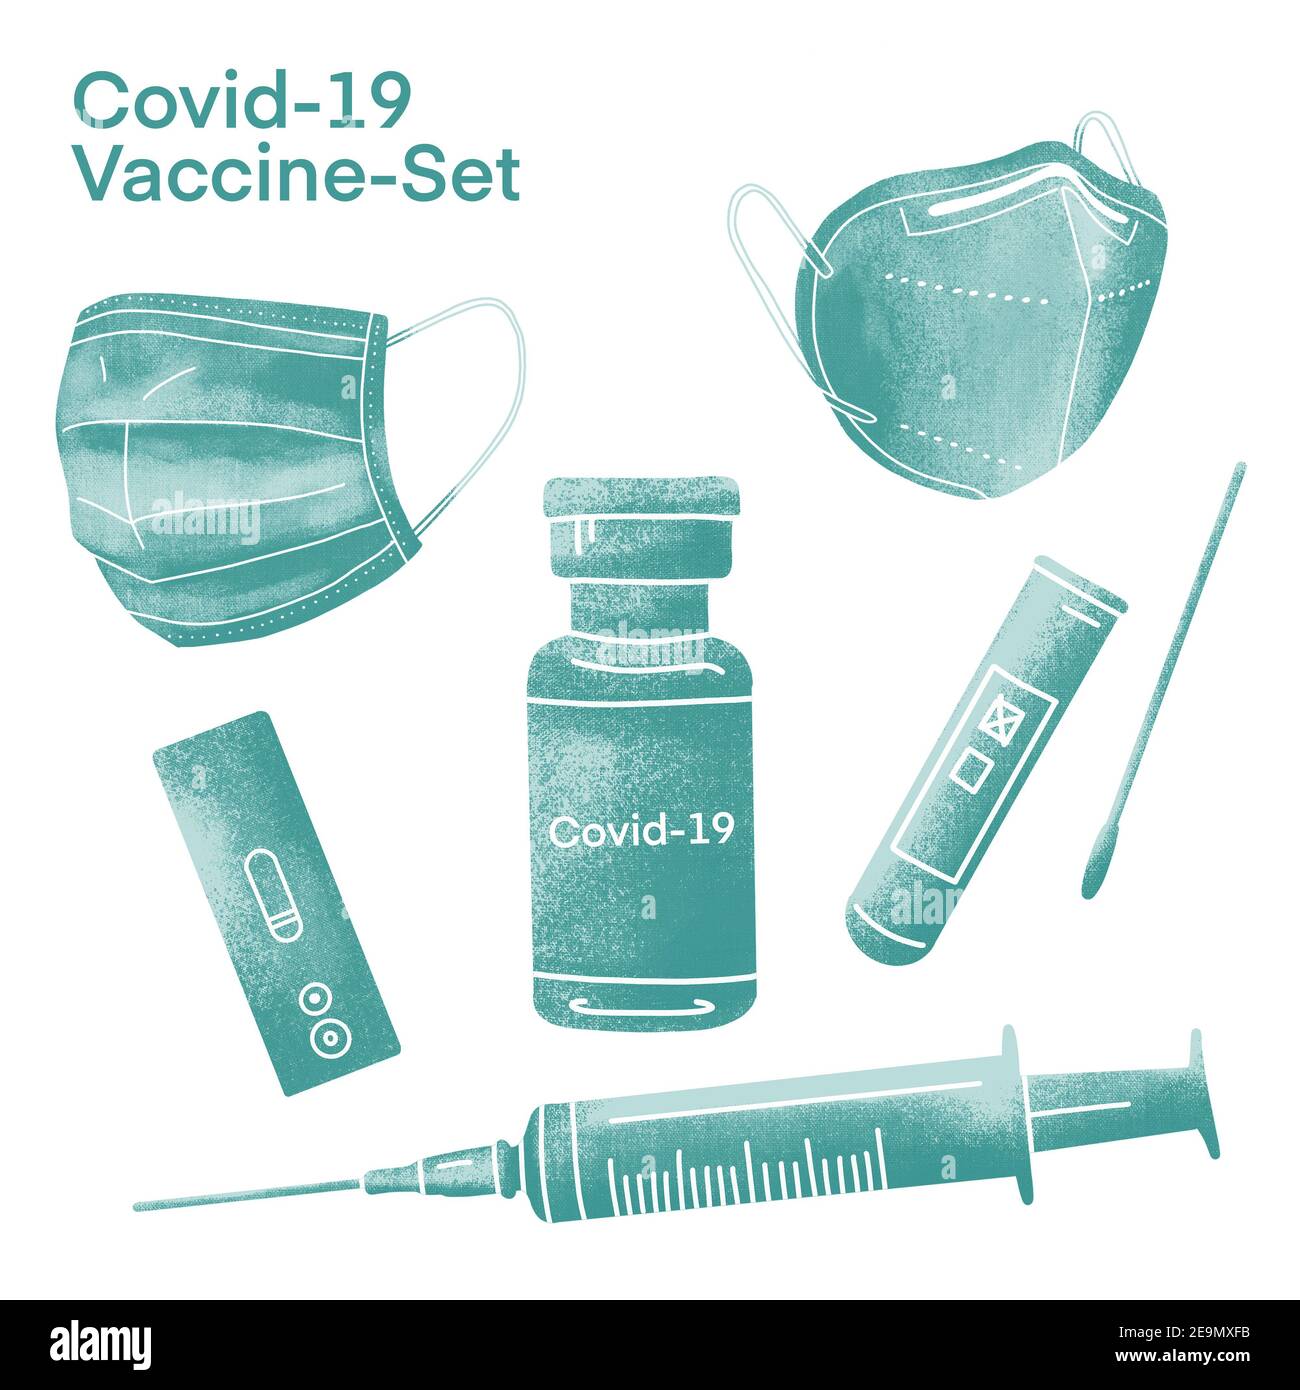 Kit vaccino Covid-19 illustrato, con maschera, fiala e siringa – verde Foto Stock